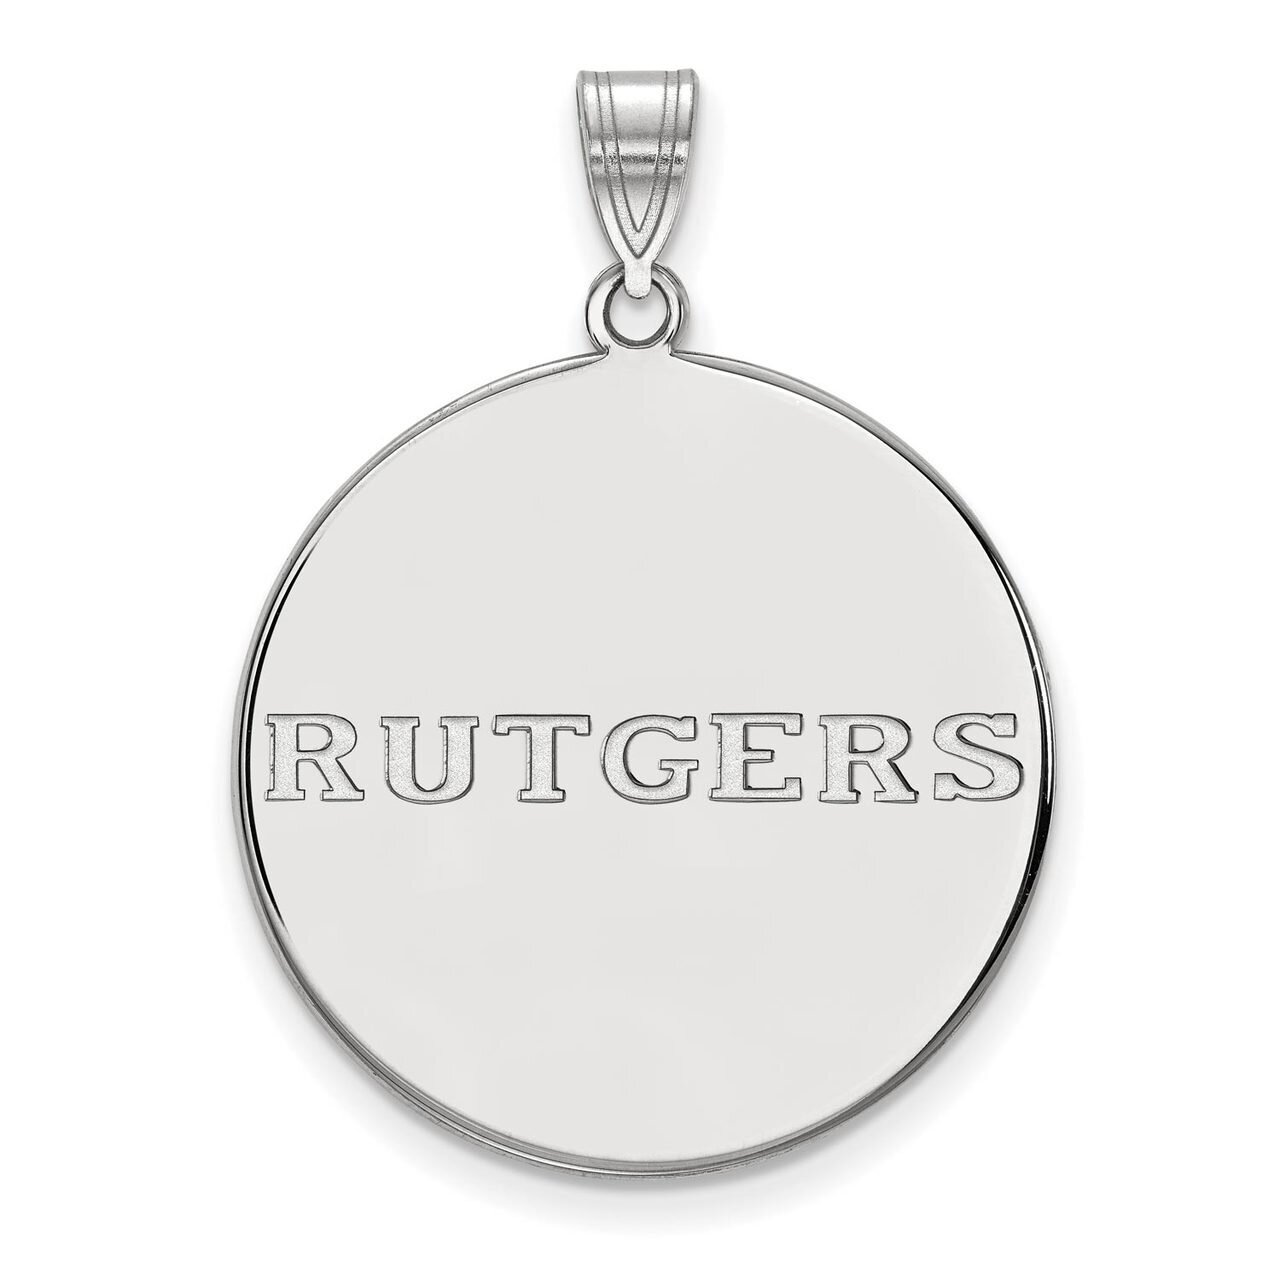 Rutgers x-Large Disc Pendant 14k White Gold 4W025RUT